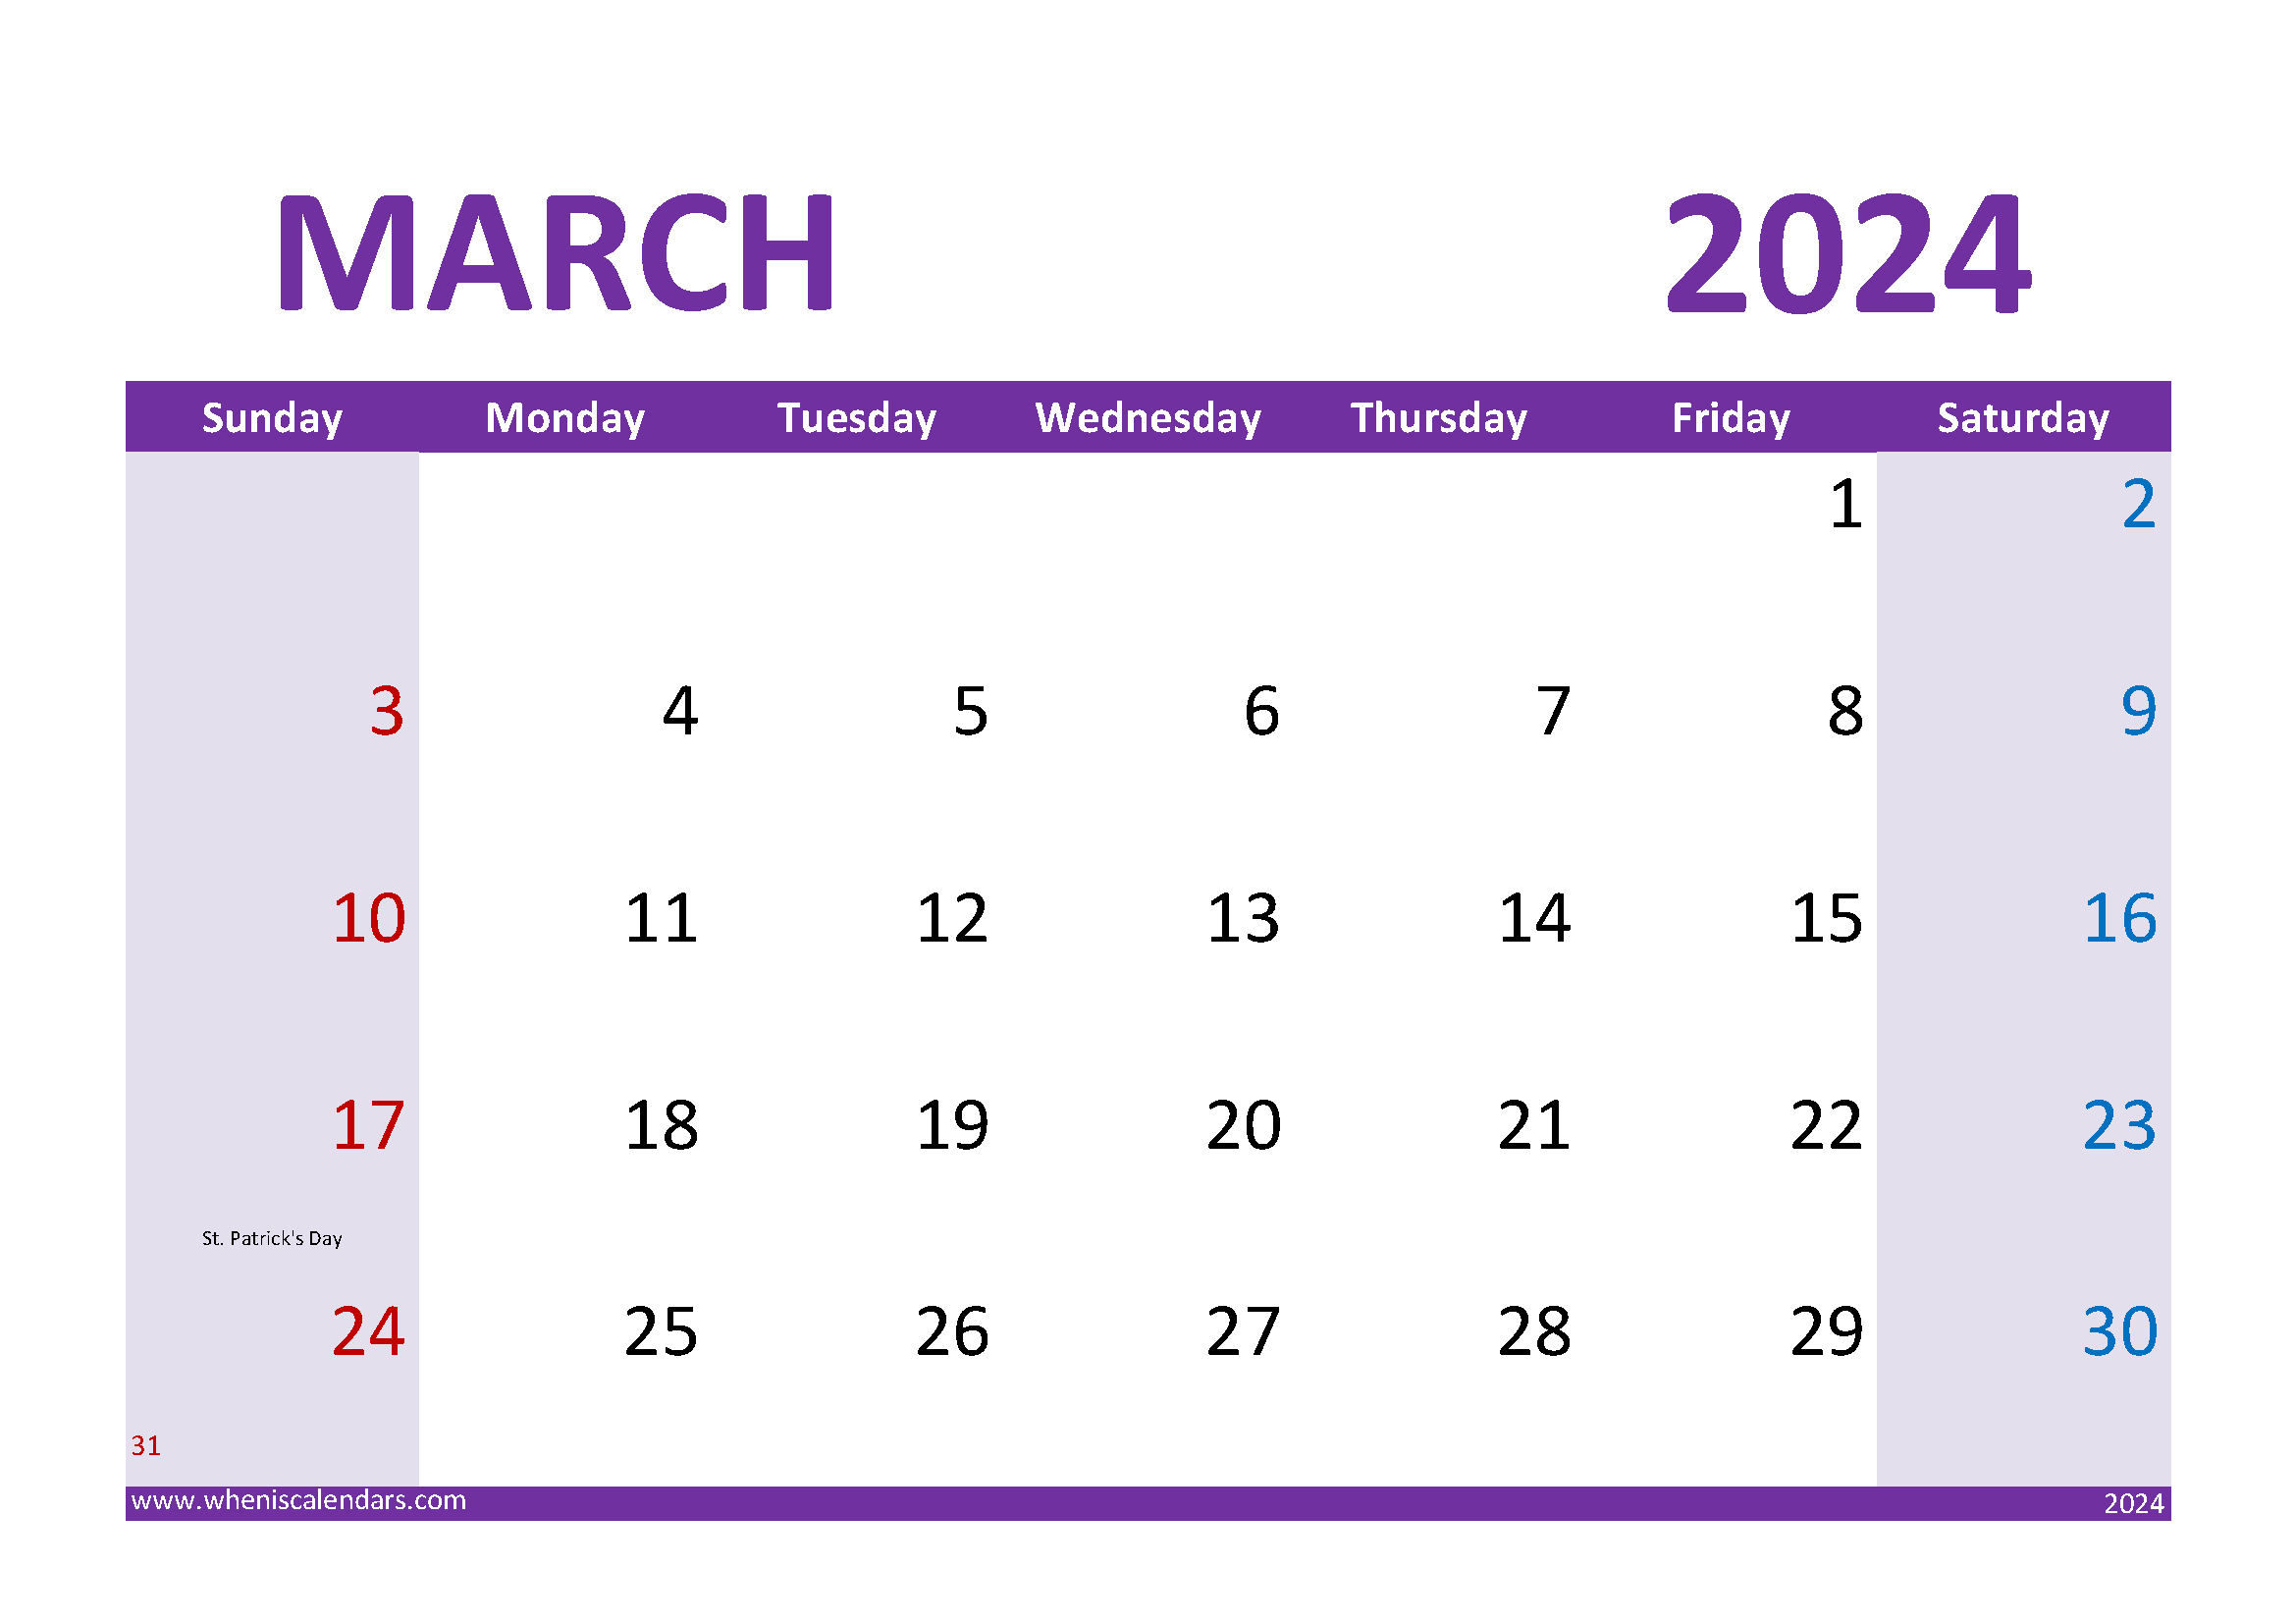 print-march-2024-calendar-monthly-calendar